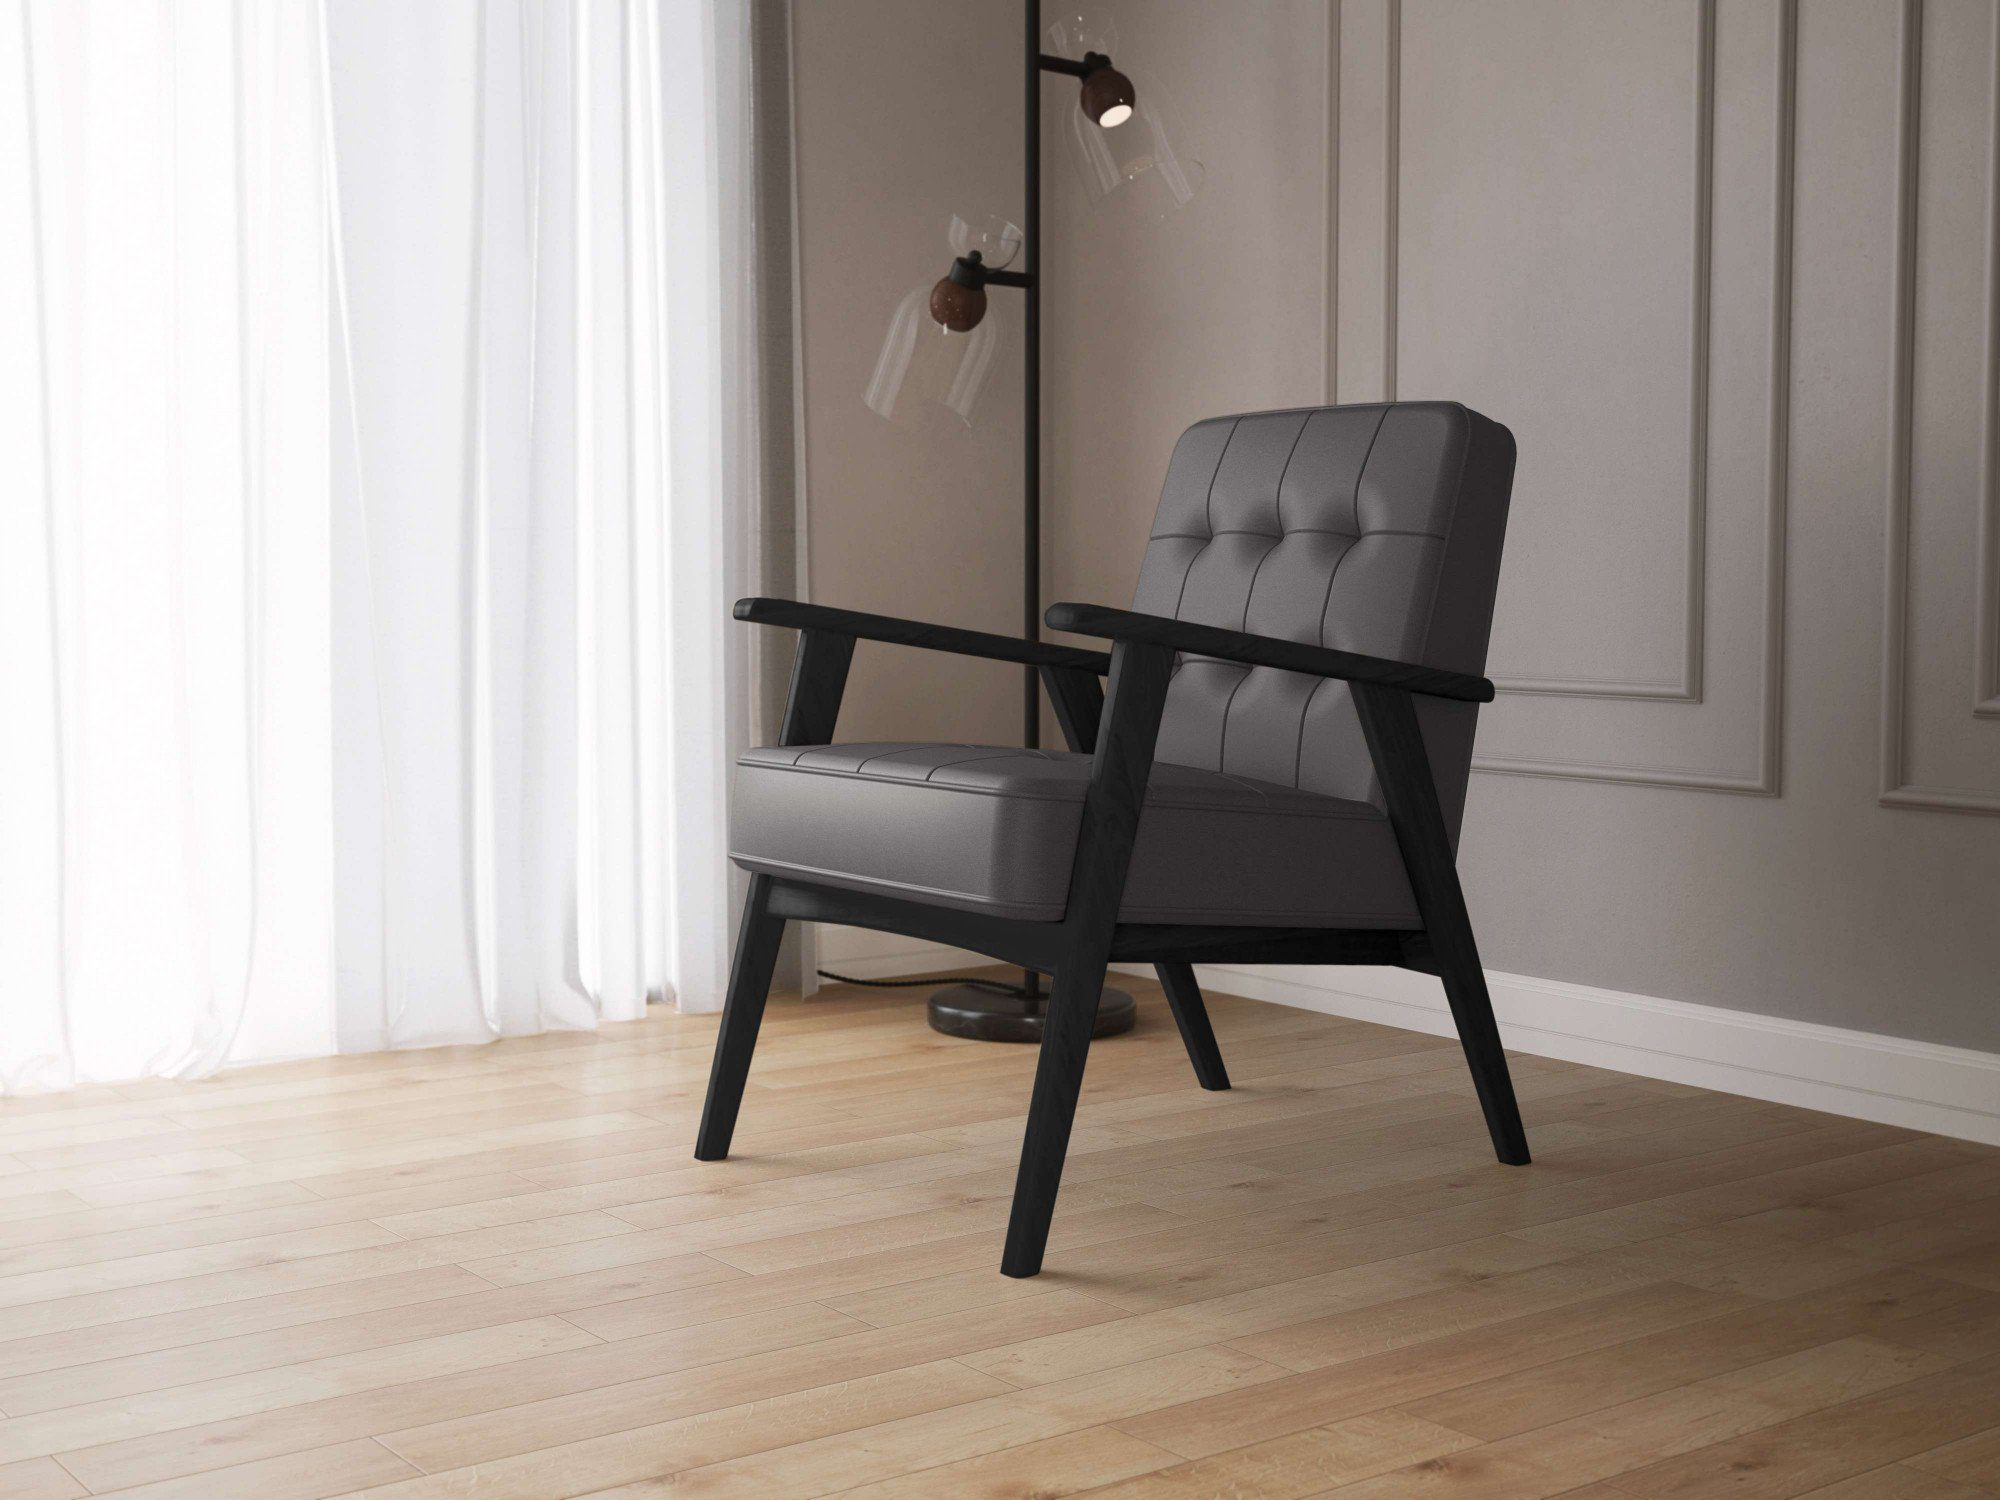 andas Sessel in Massivholz, Lederoptik, Sitzkomfort Alvared, aus mit Black Jet Design Wellenunterfederung für edles hohen